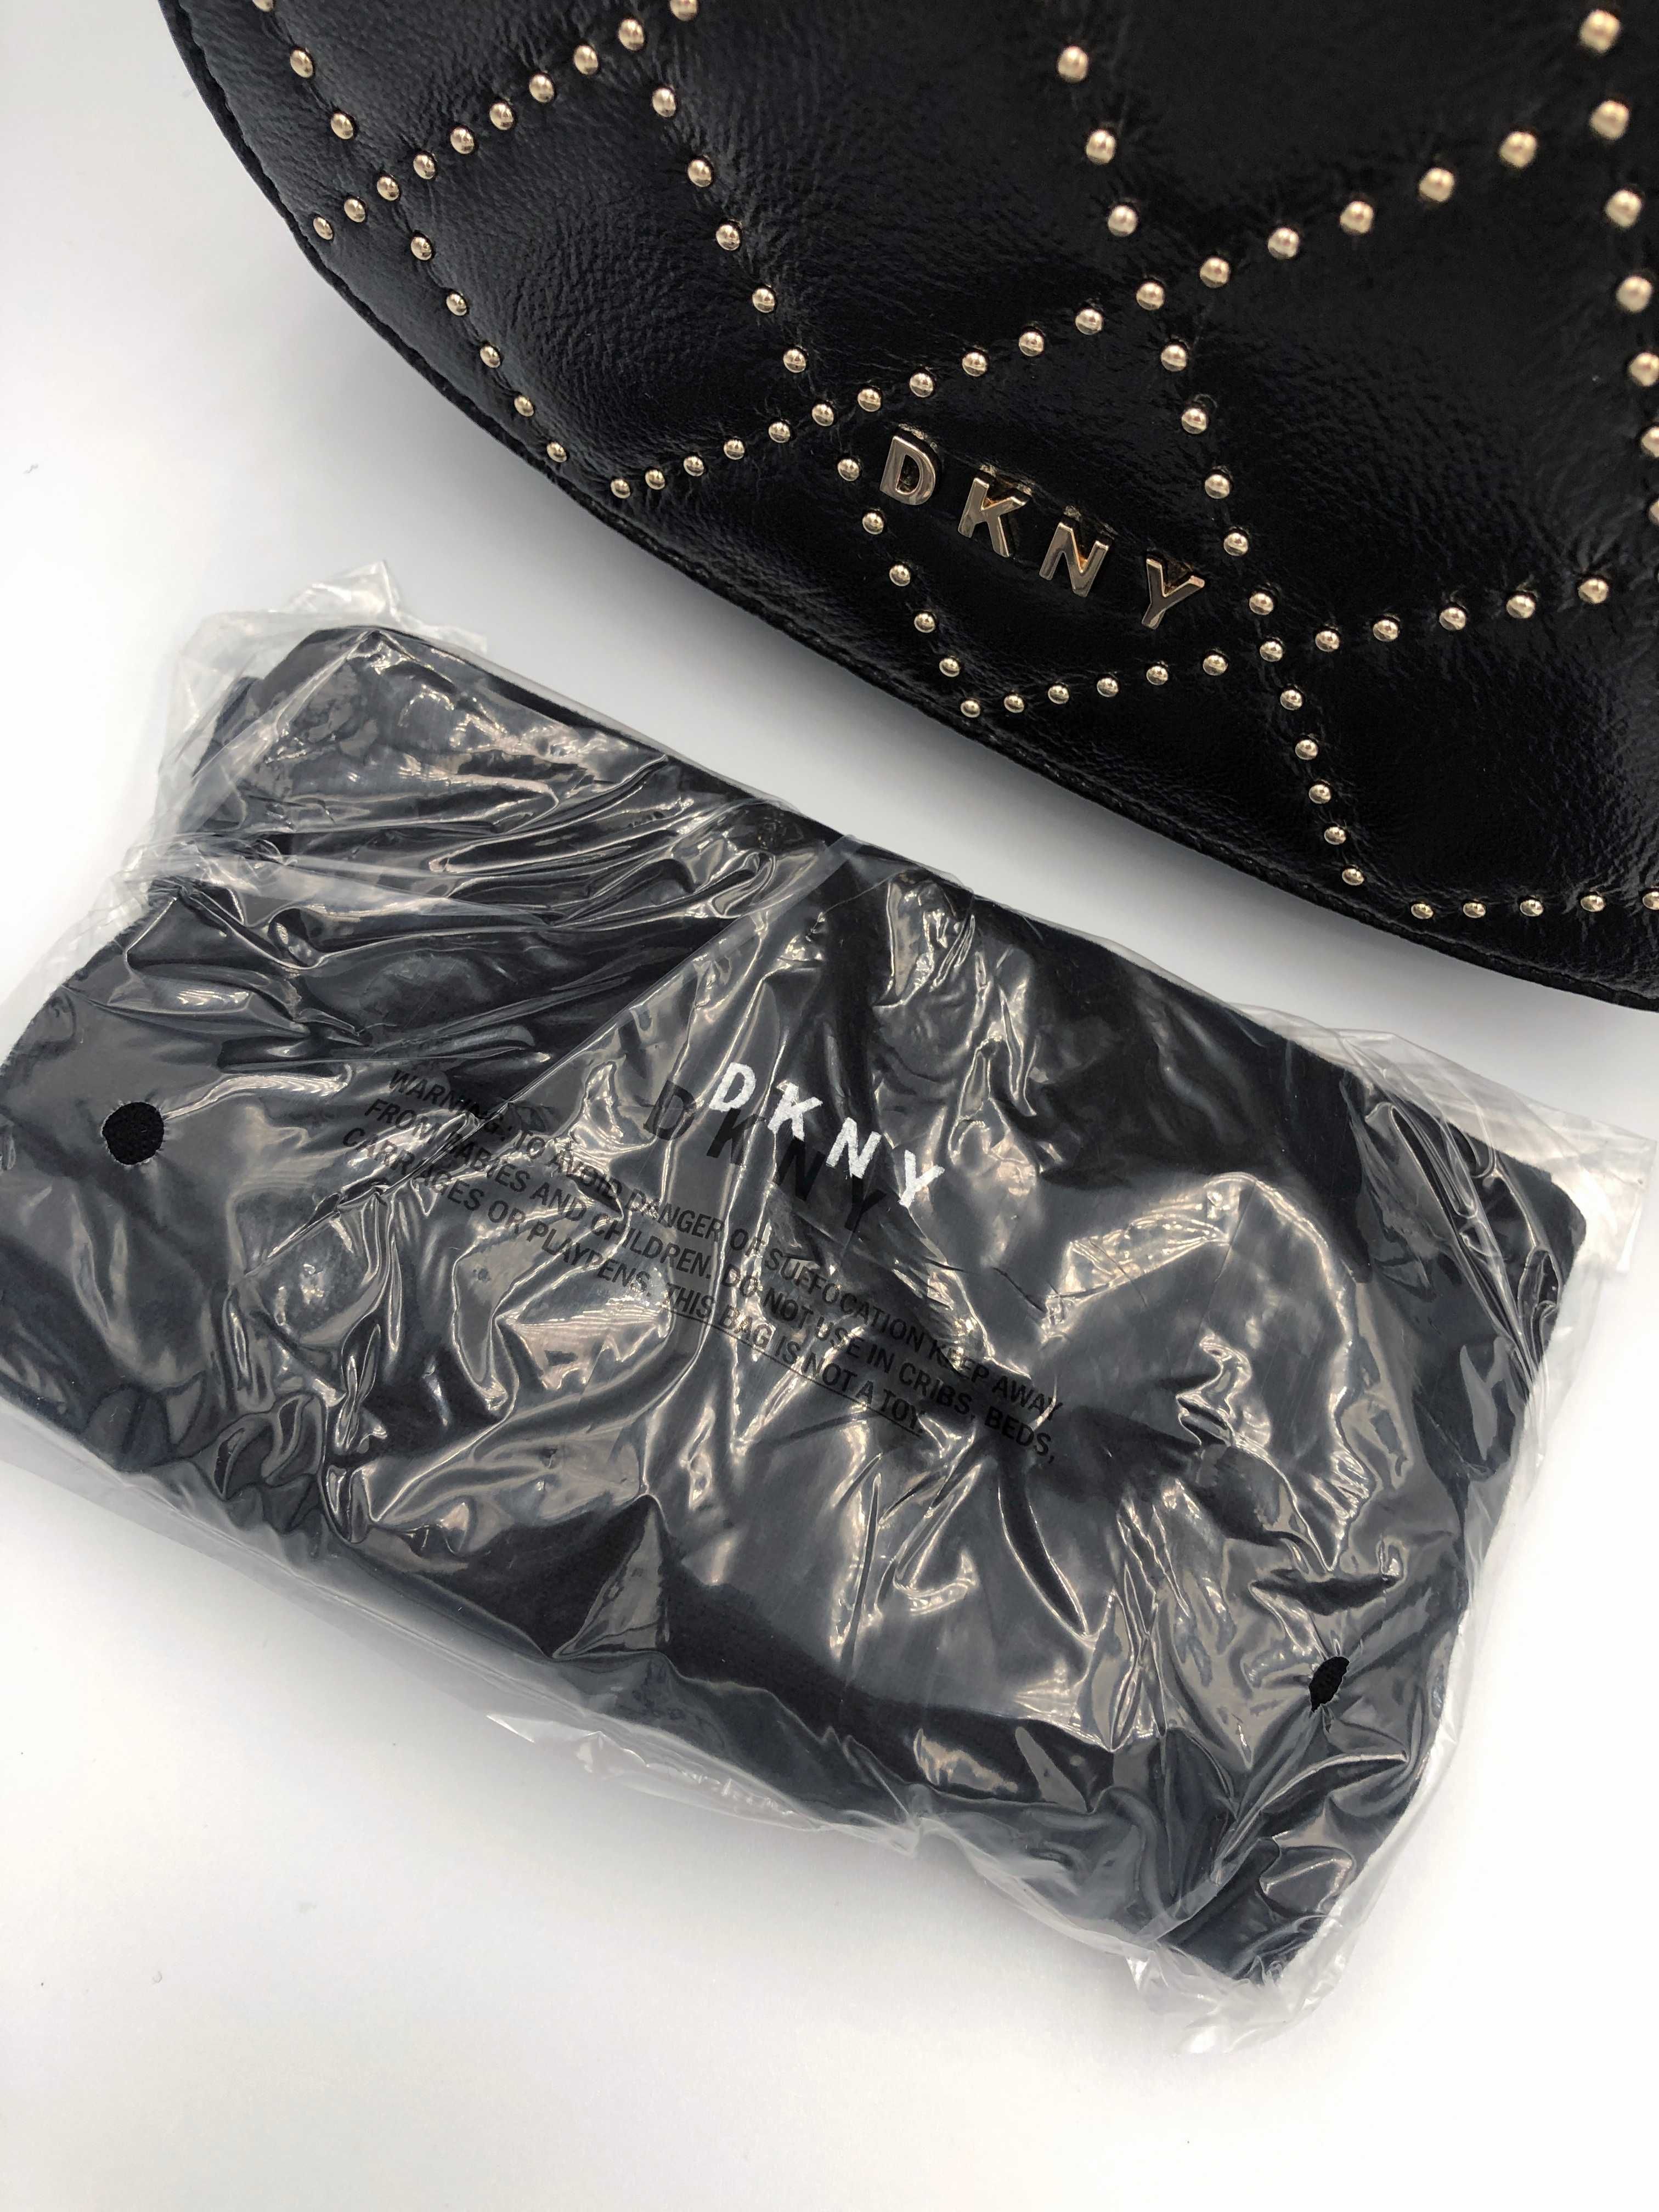 Torebka DKNY, Donna Karan - Saddle bag - nowa